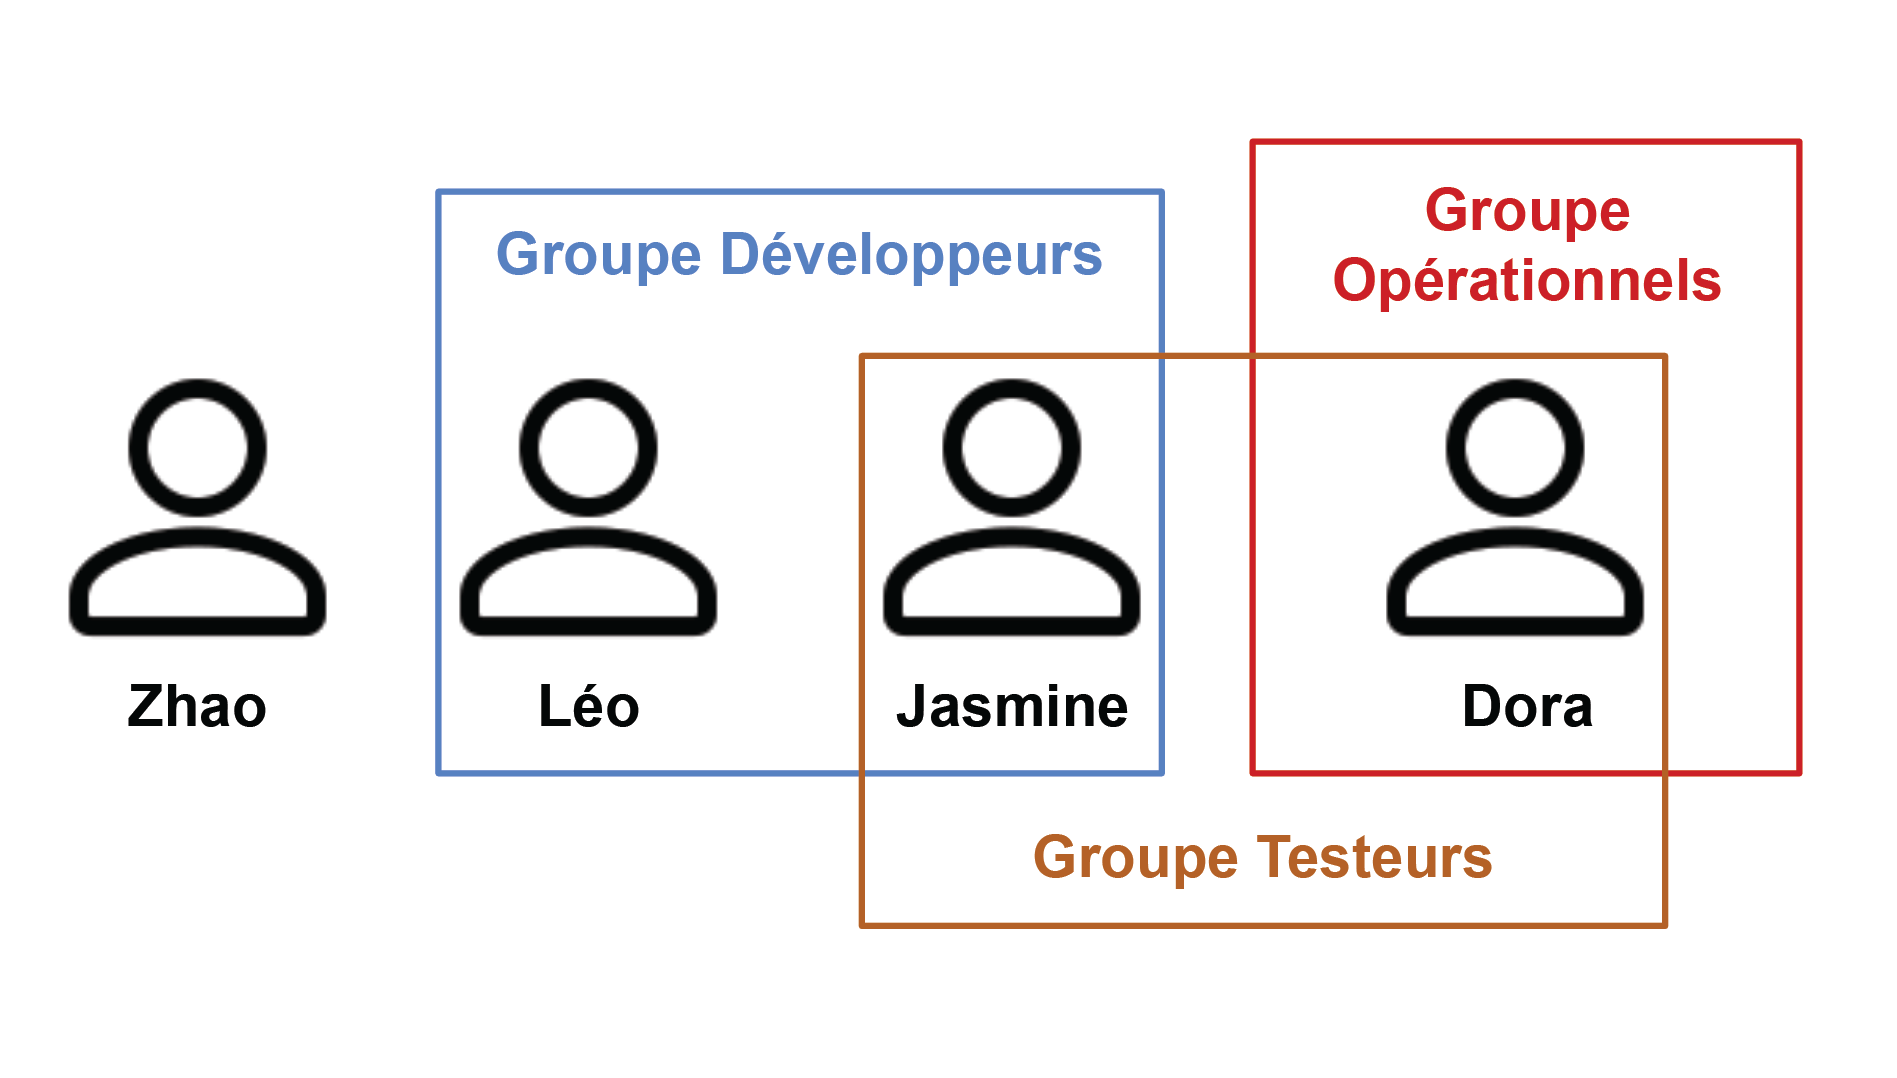 Zhao n’est dans aucun groupe. Léo et Jasmine sont dans le groupe développeurs. Dora est dans le groupe opérationnels. Le groupe testeurs contient Jasmine et Dora